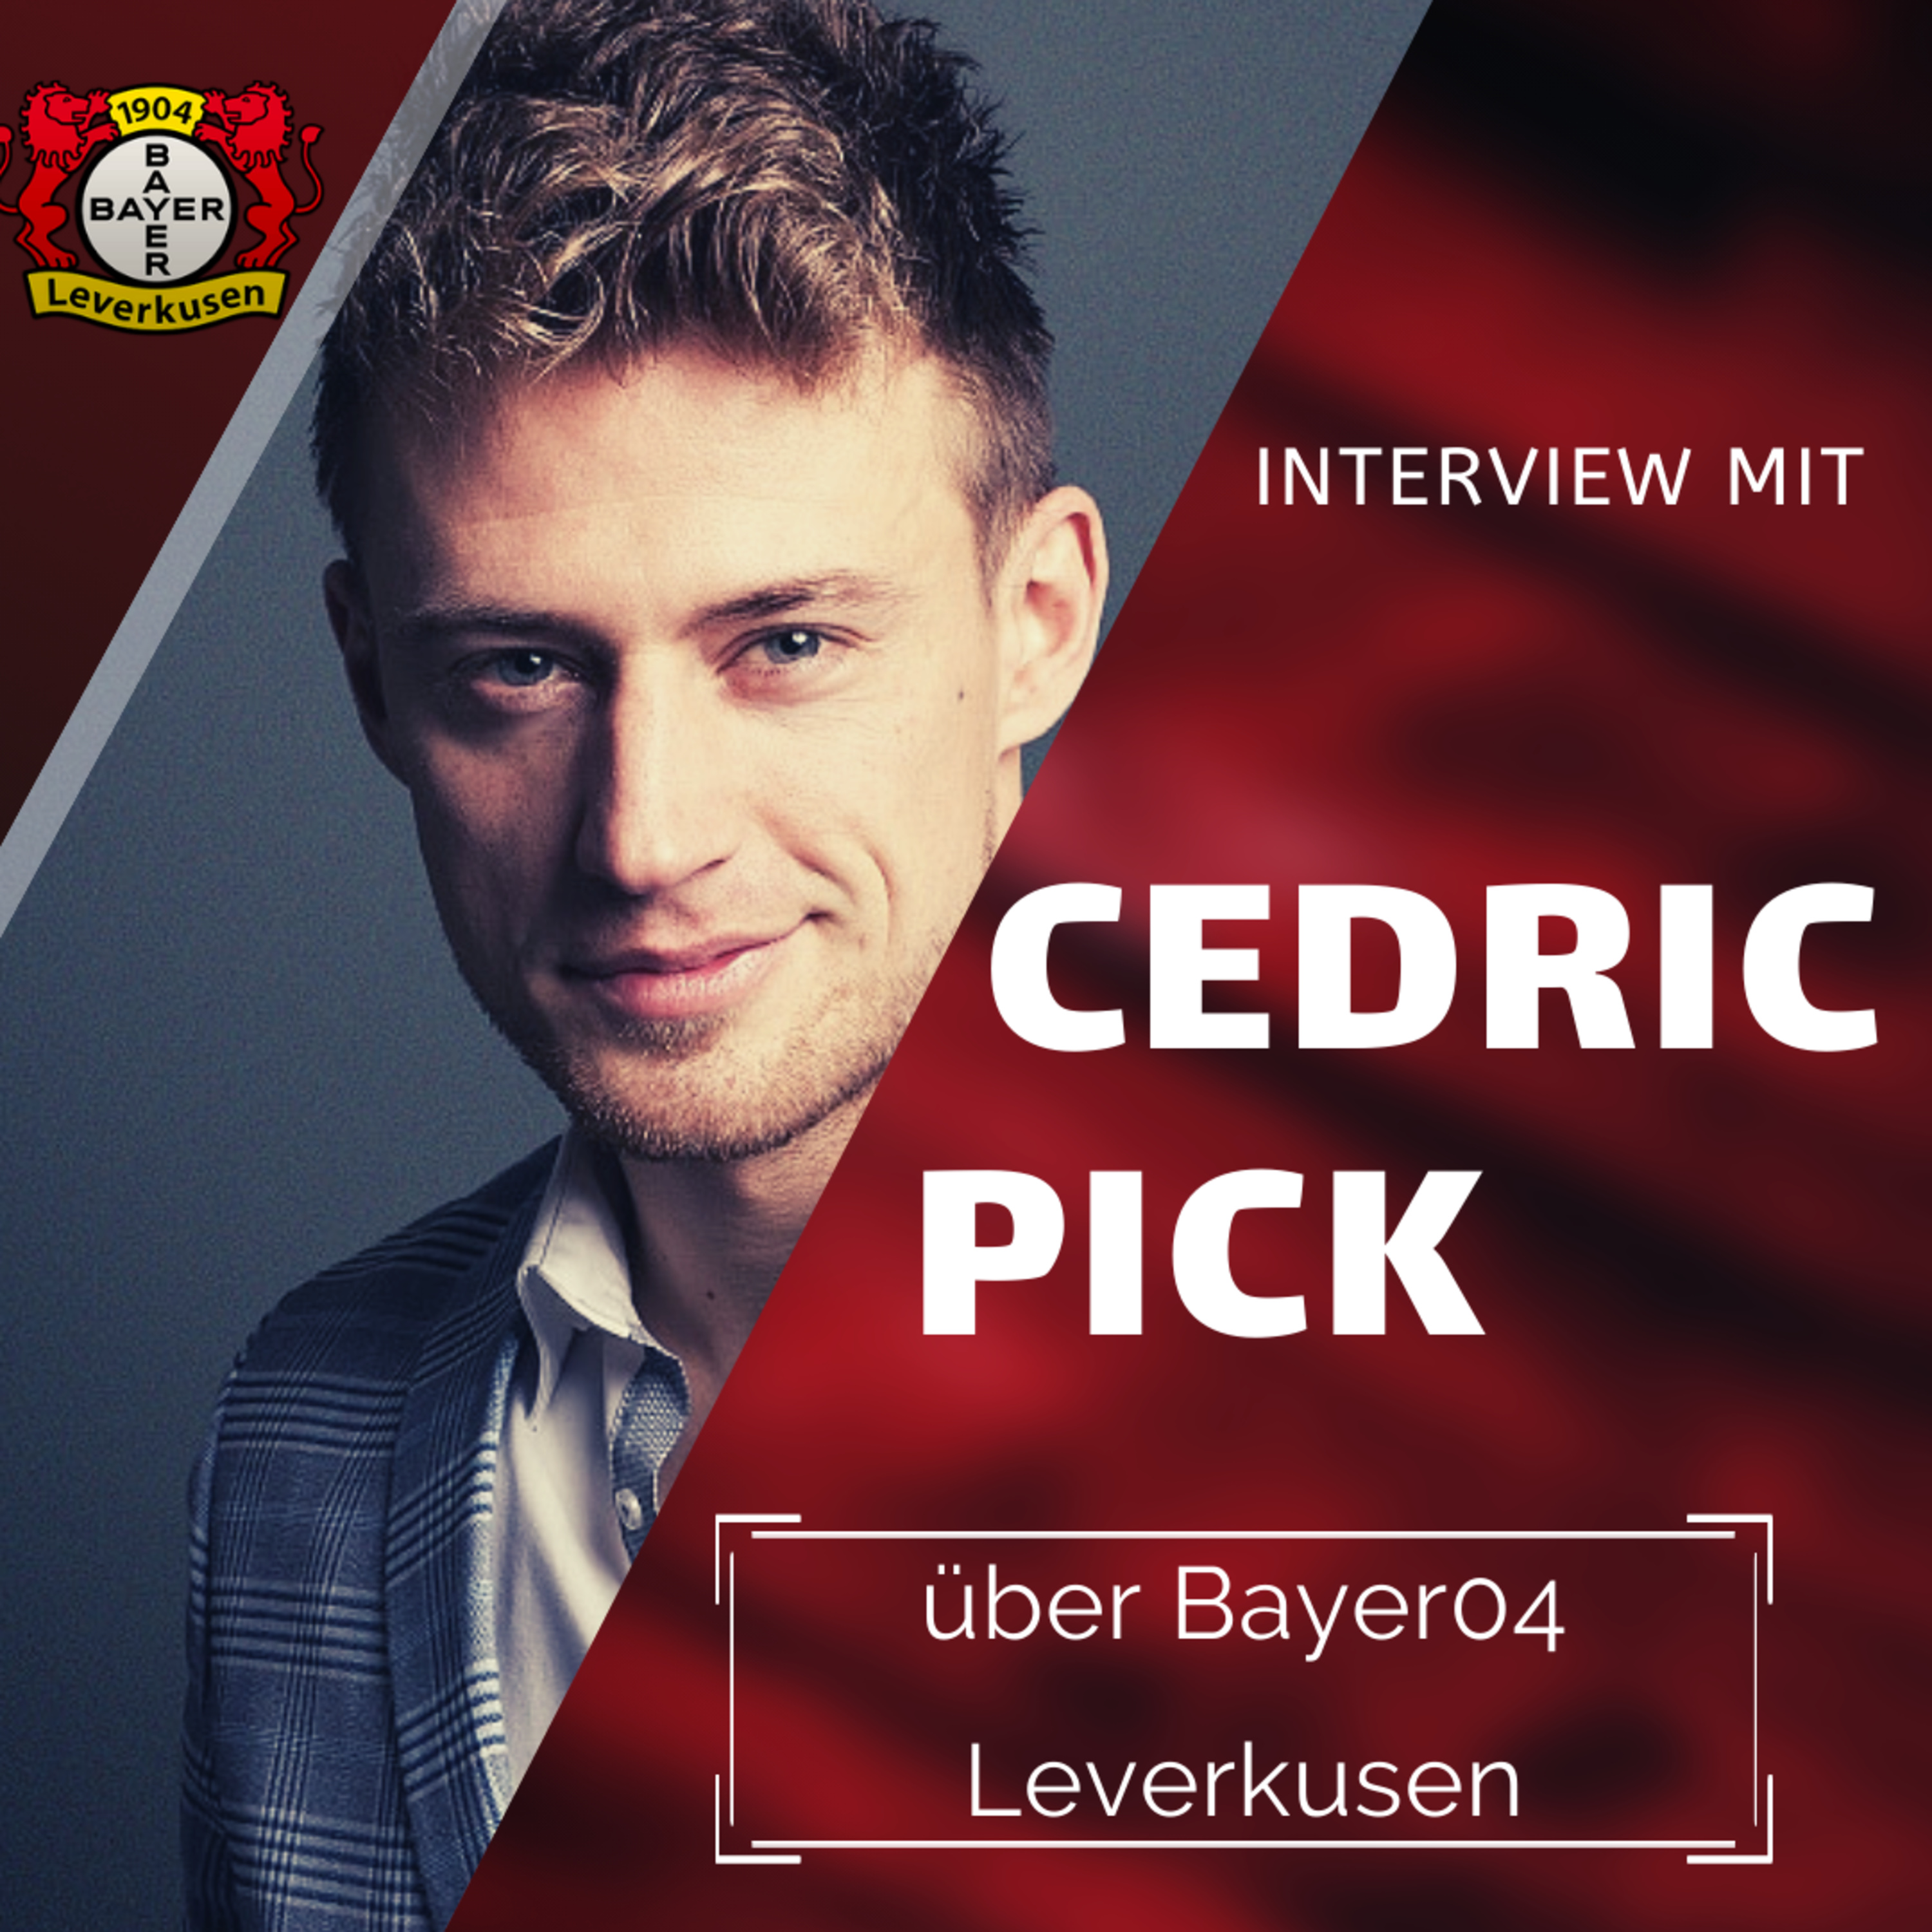 Interview mit Cedric Pick über Bayer04 Leverkusen